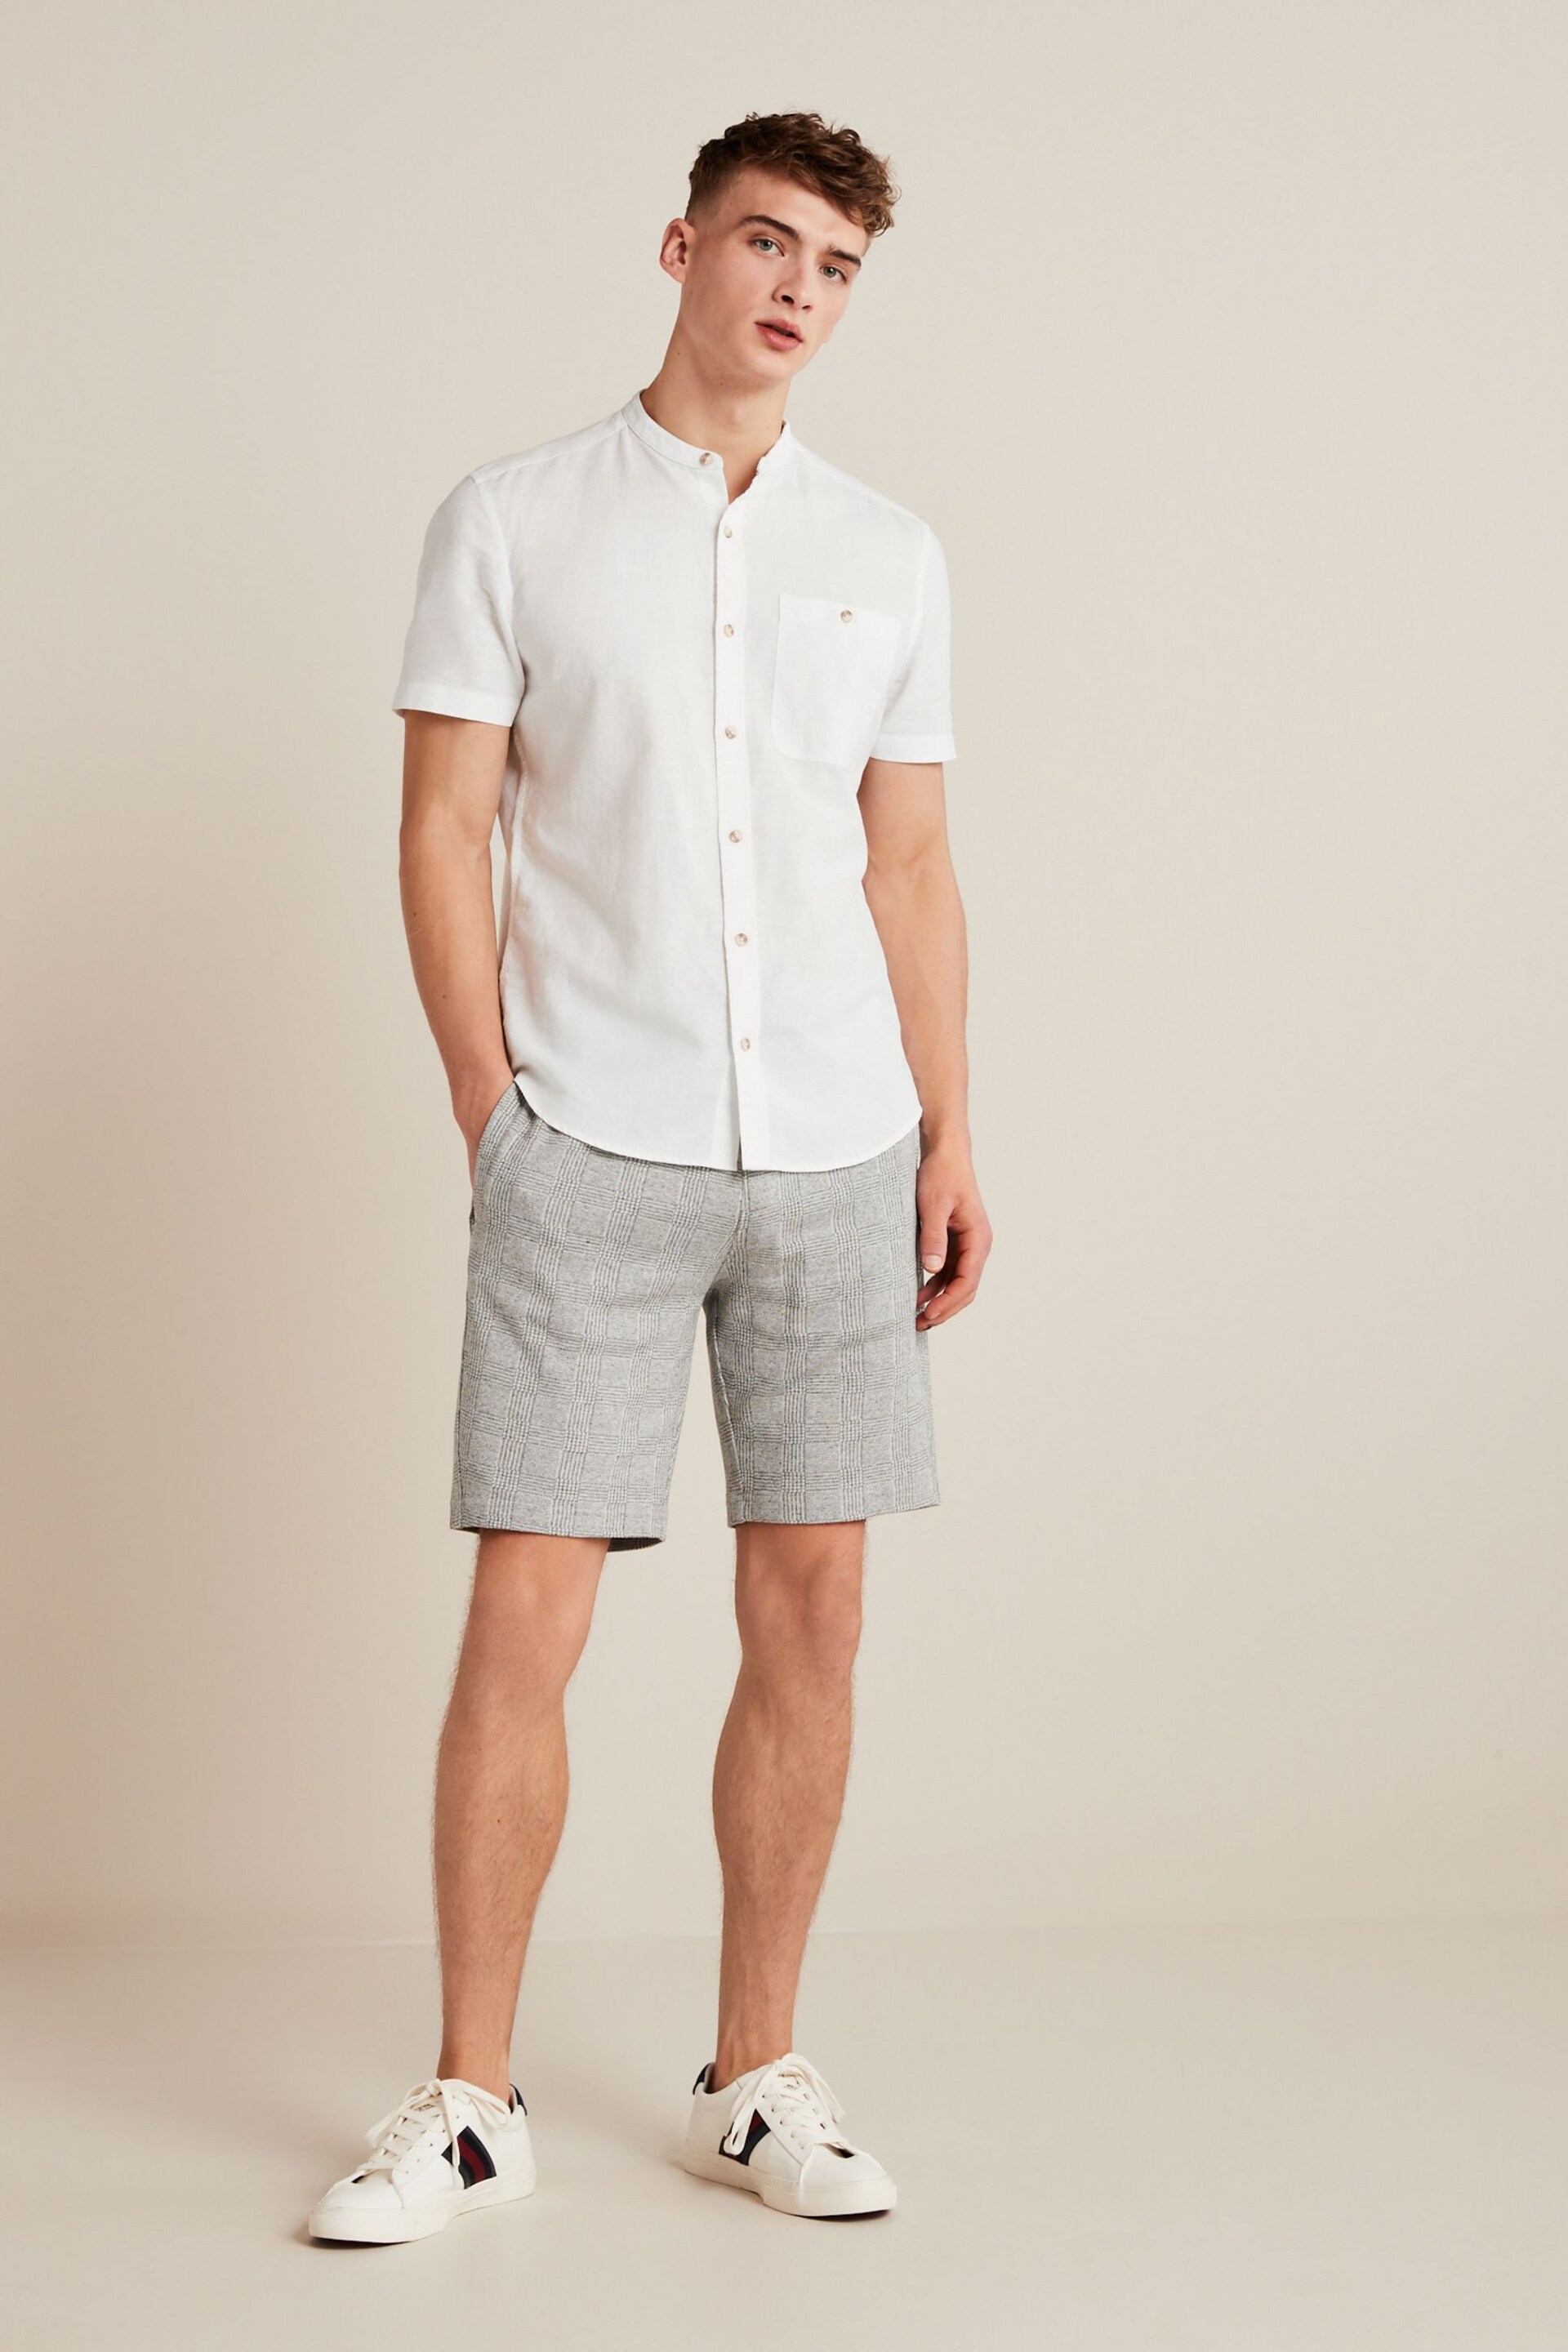 White Grandad Collar Linen Blend Short Sleeve Shirt - Image 2 of 5